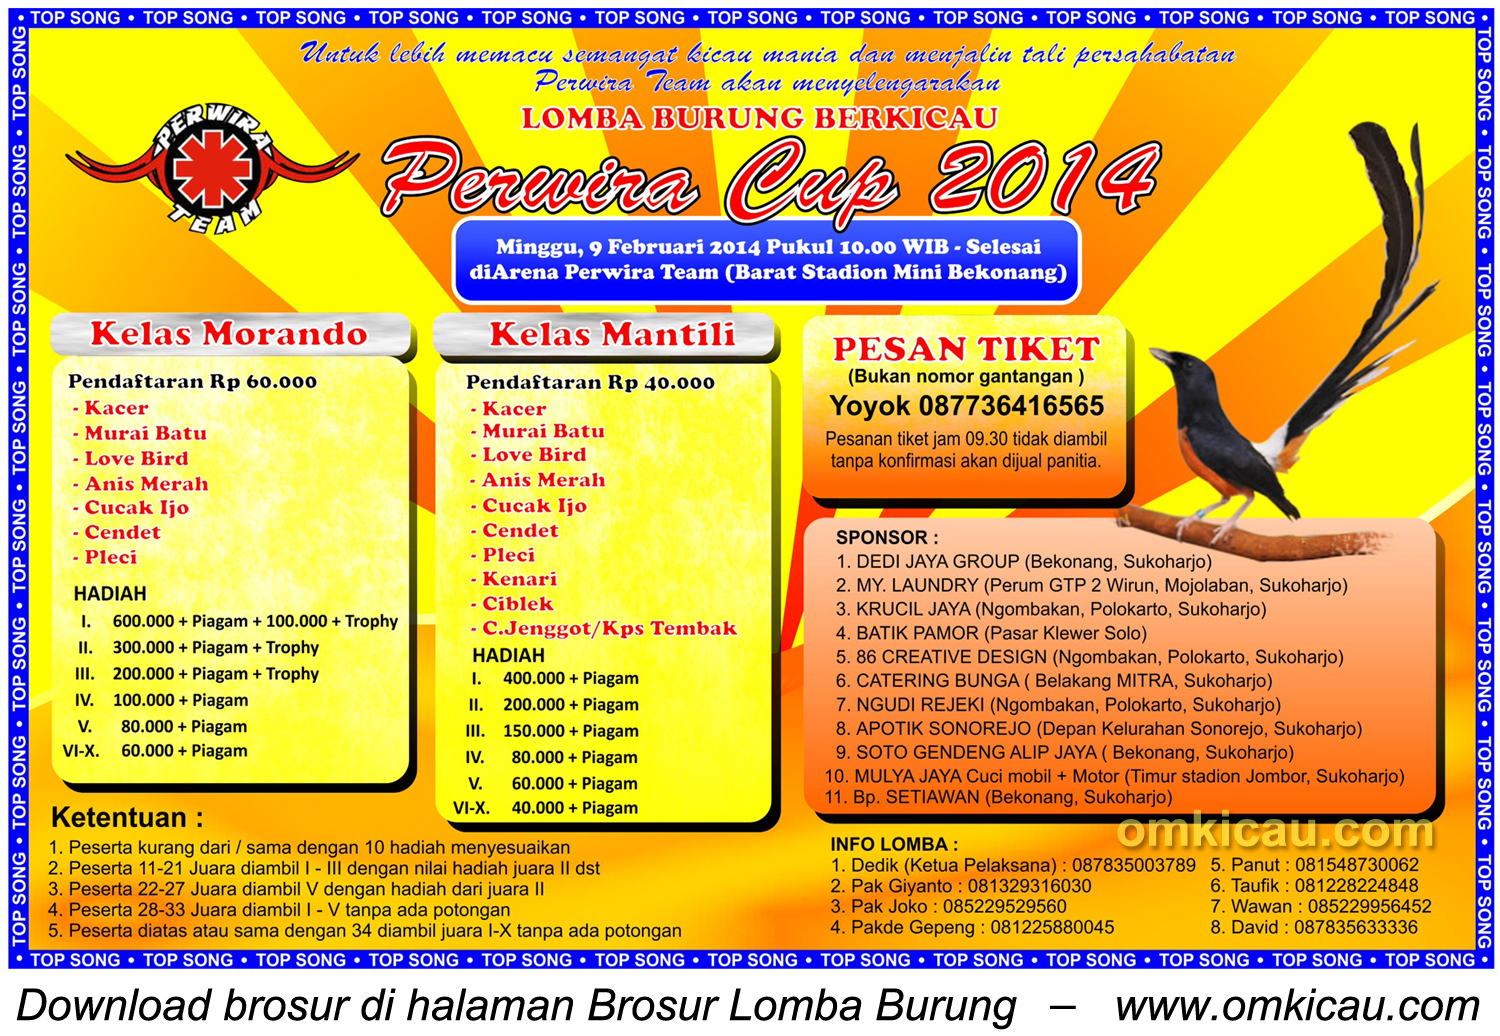 Brosur Lomba Burung Berkicau Perwira Cup Bekonang, Sukoharjo, 9 Februari 2014